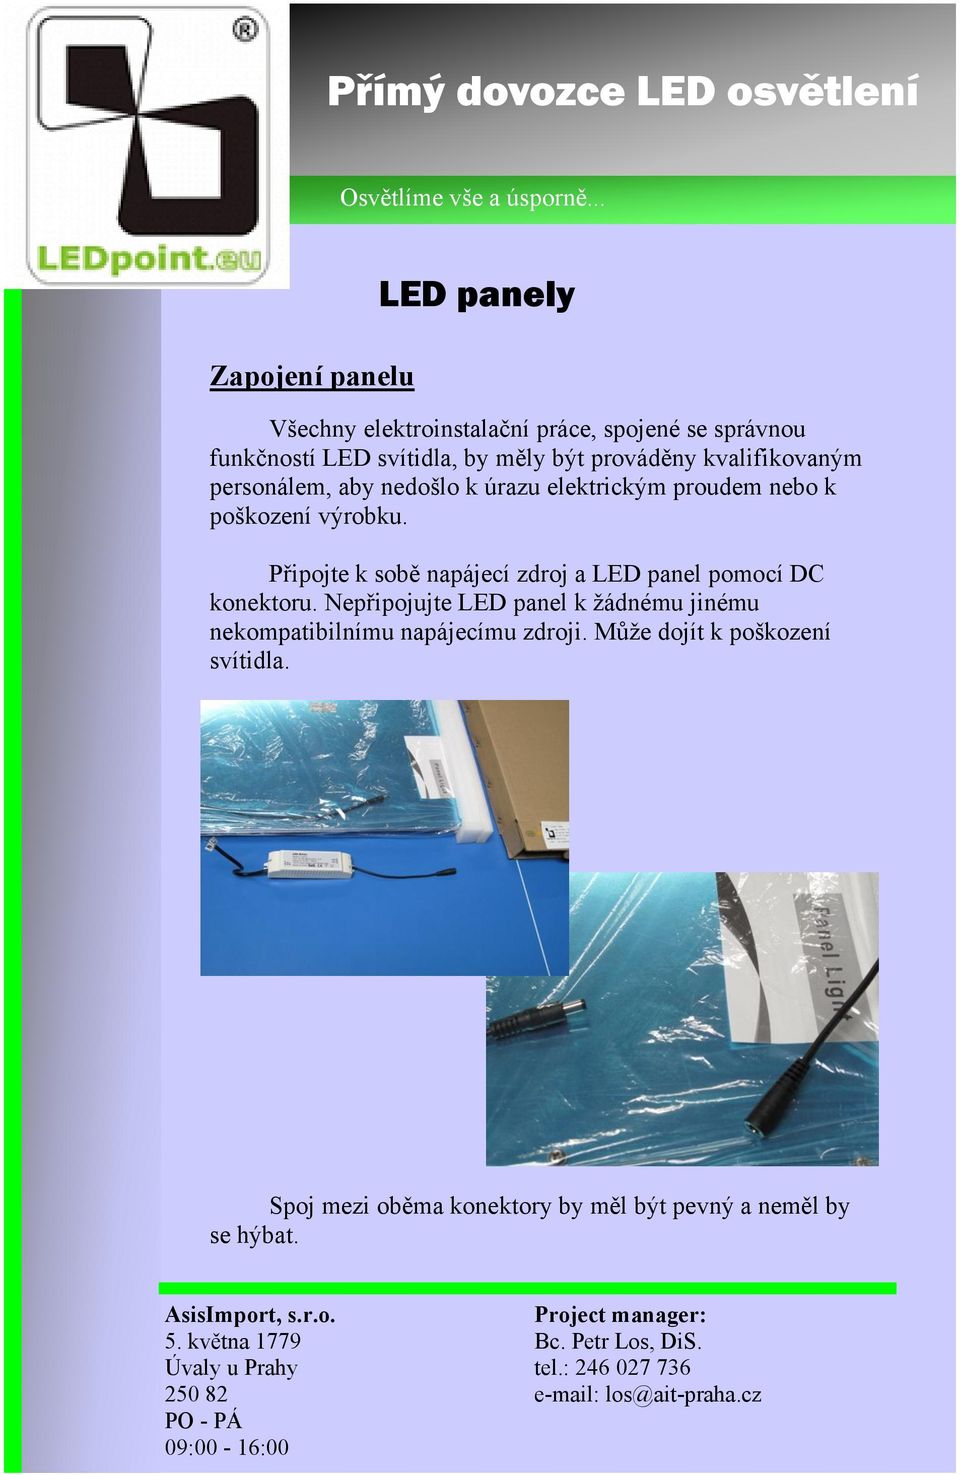 Připojte k sobě napájecí zdroj a LED panel pomocí DC konektoru.